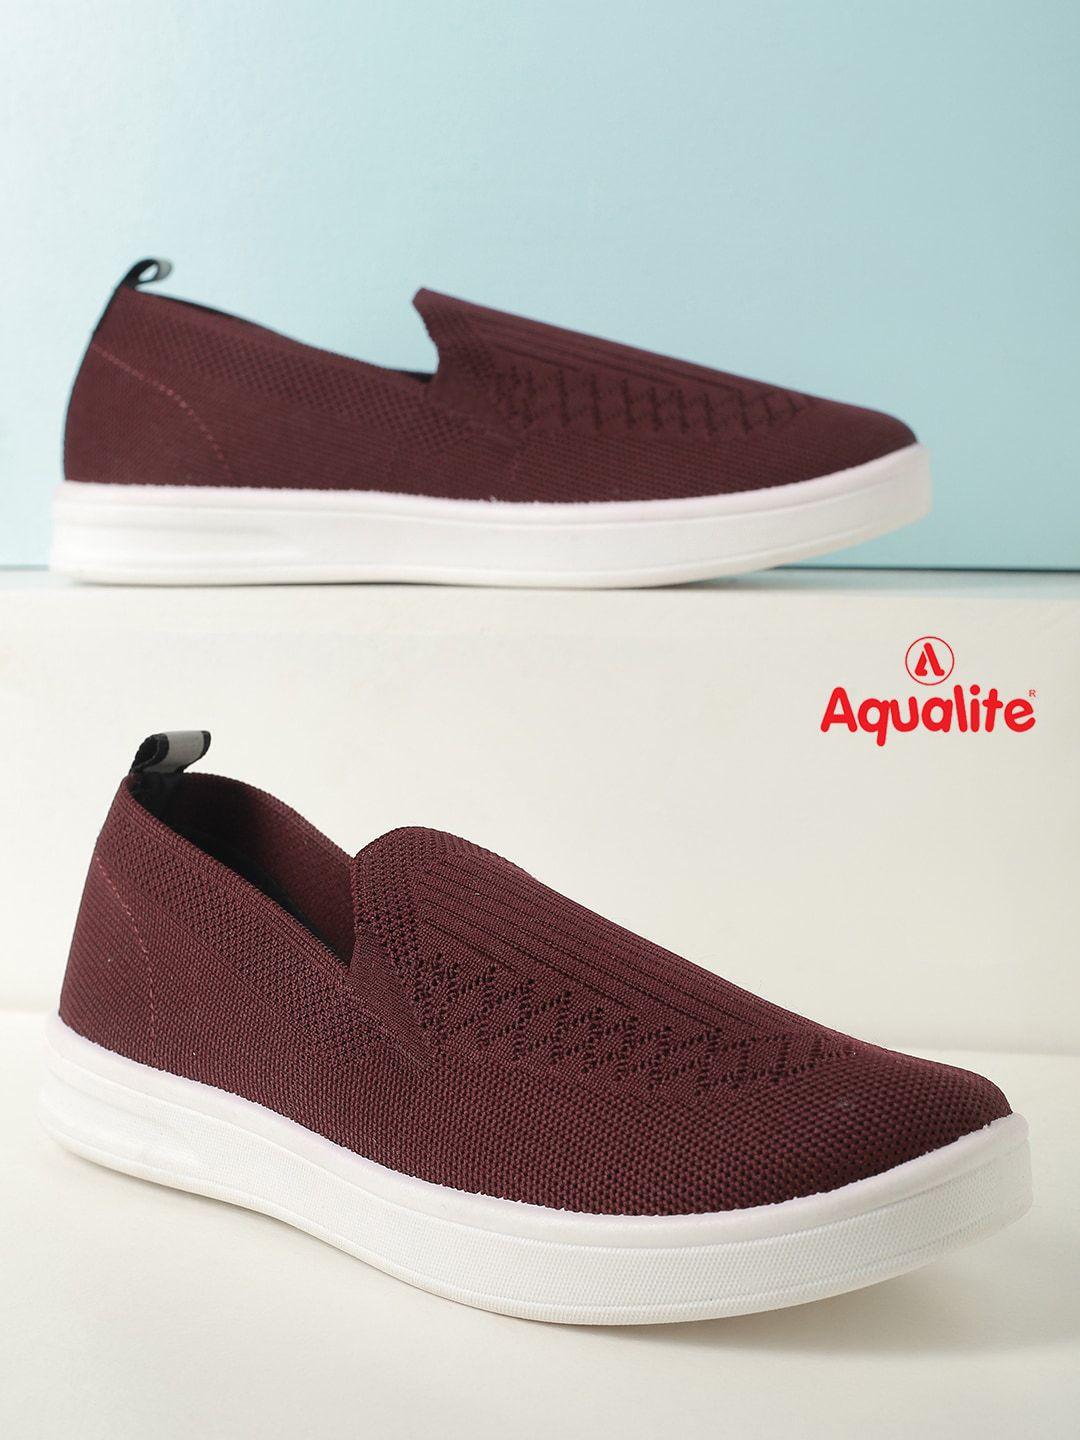 aqualite women maroon textured slip-on sneakers